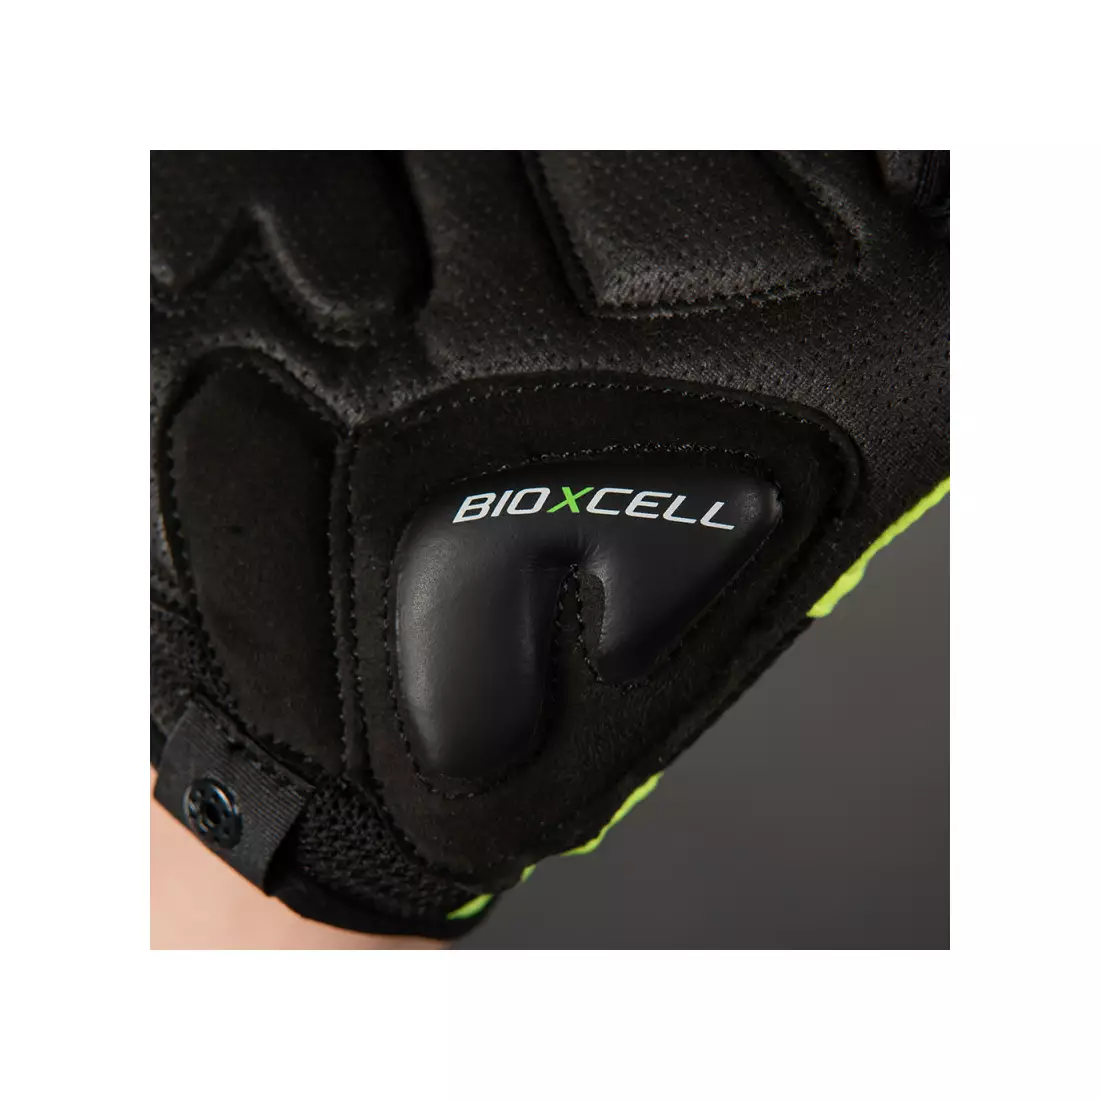 CHIBA cyklistické rukavice bioxcell Černá 3060120 